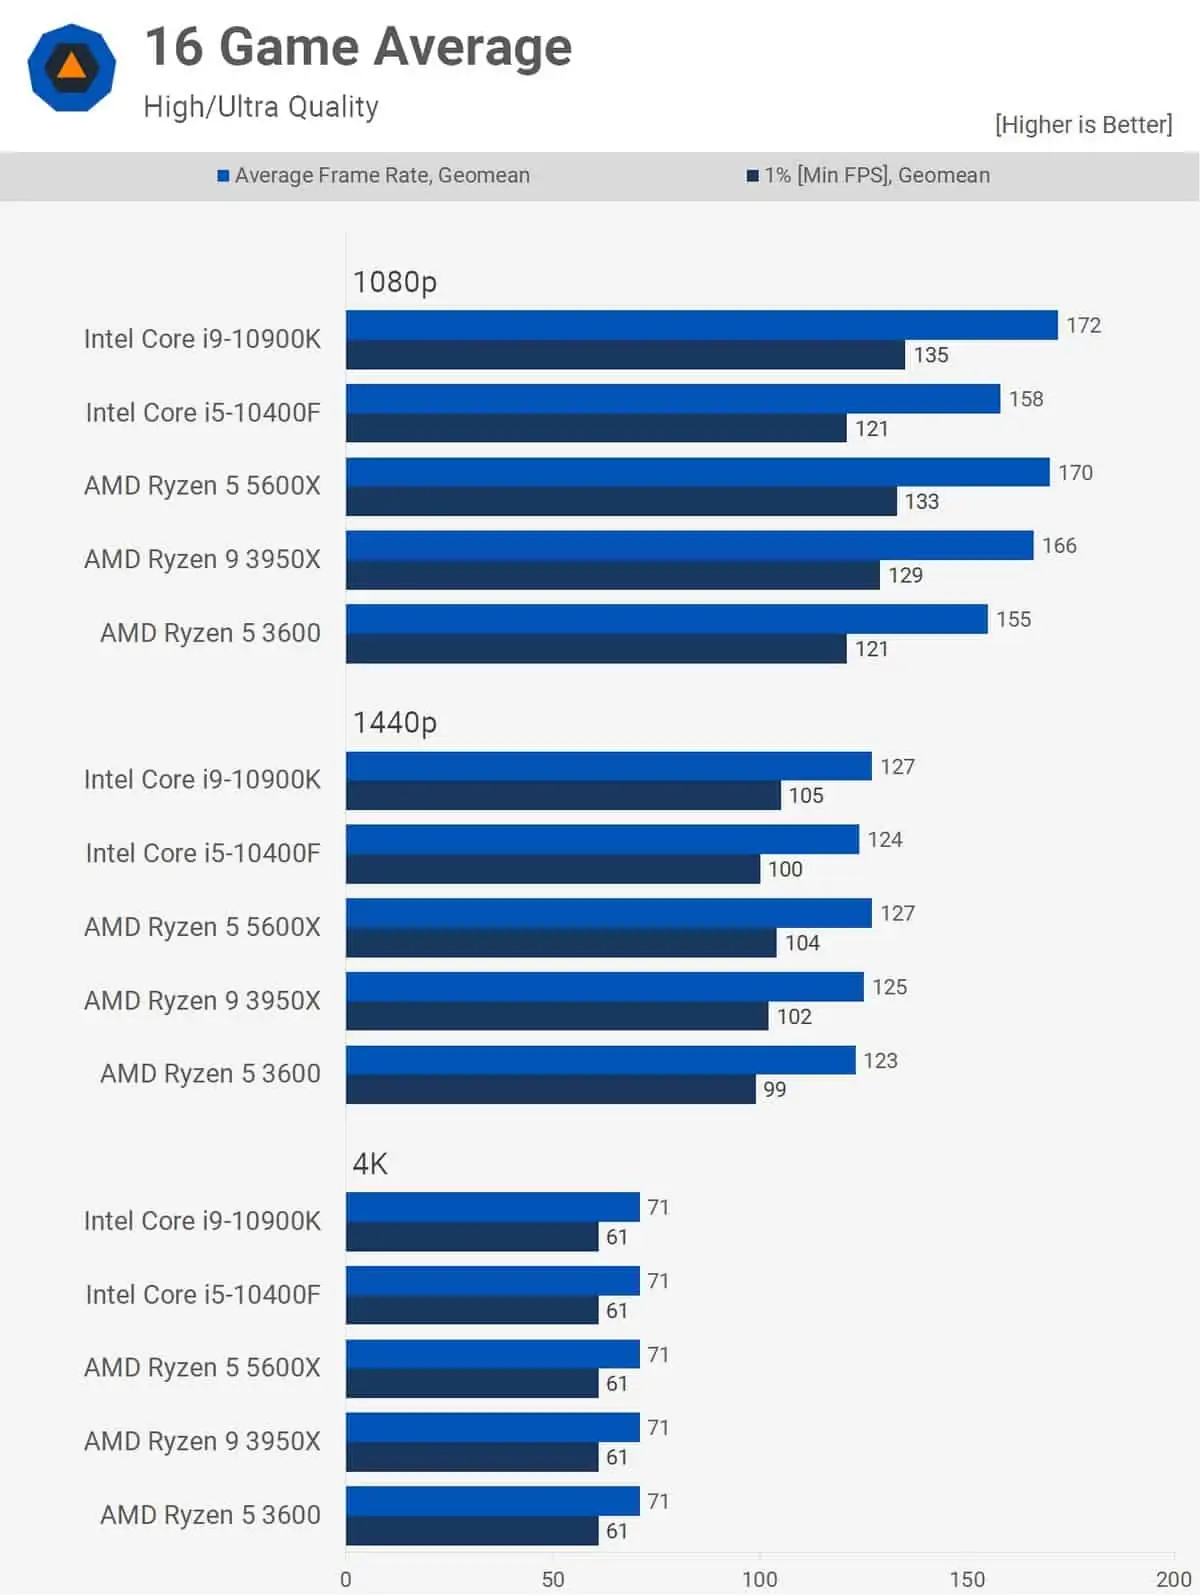 Entenda as Diferenças Entre Processadores da AMD - Blog da Razor